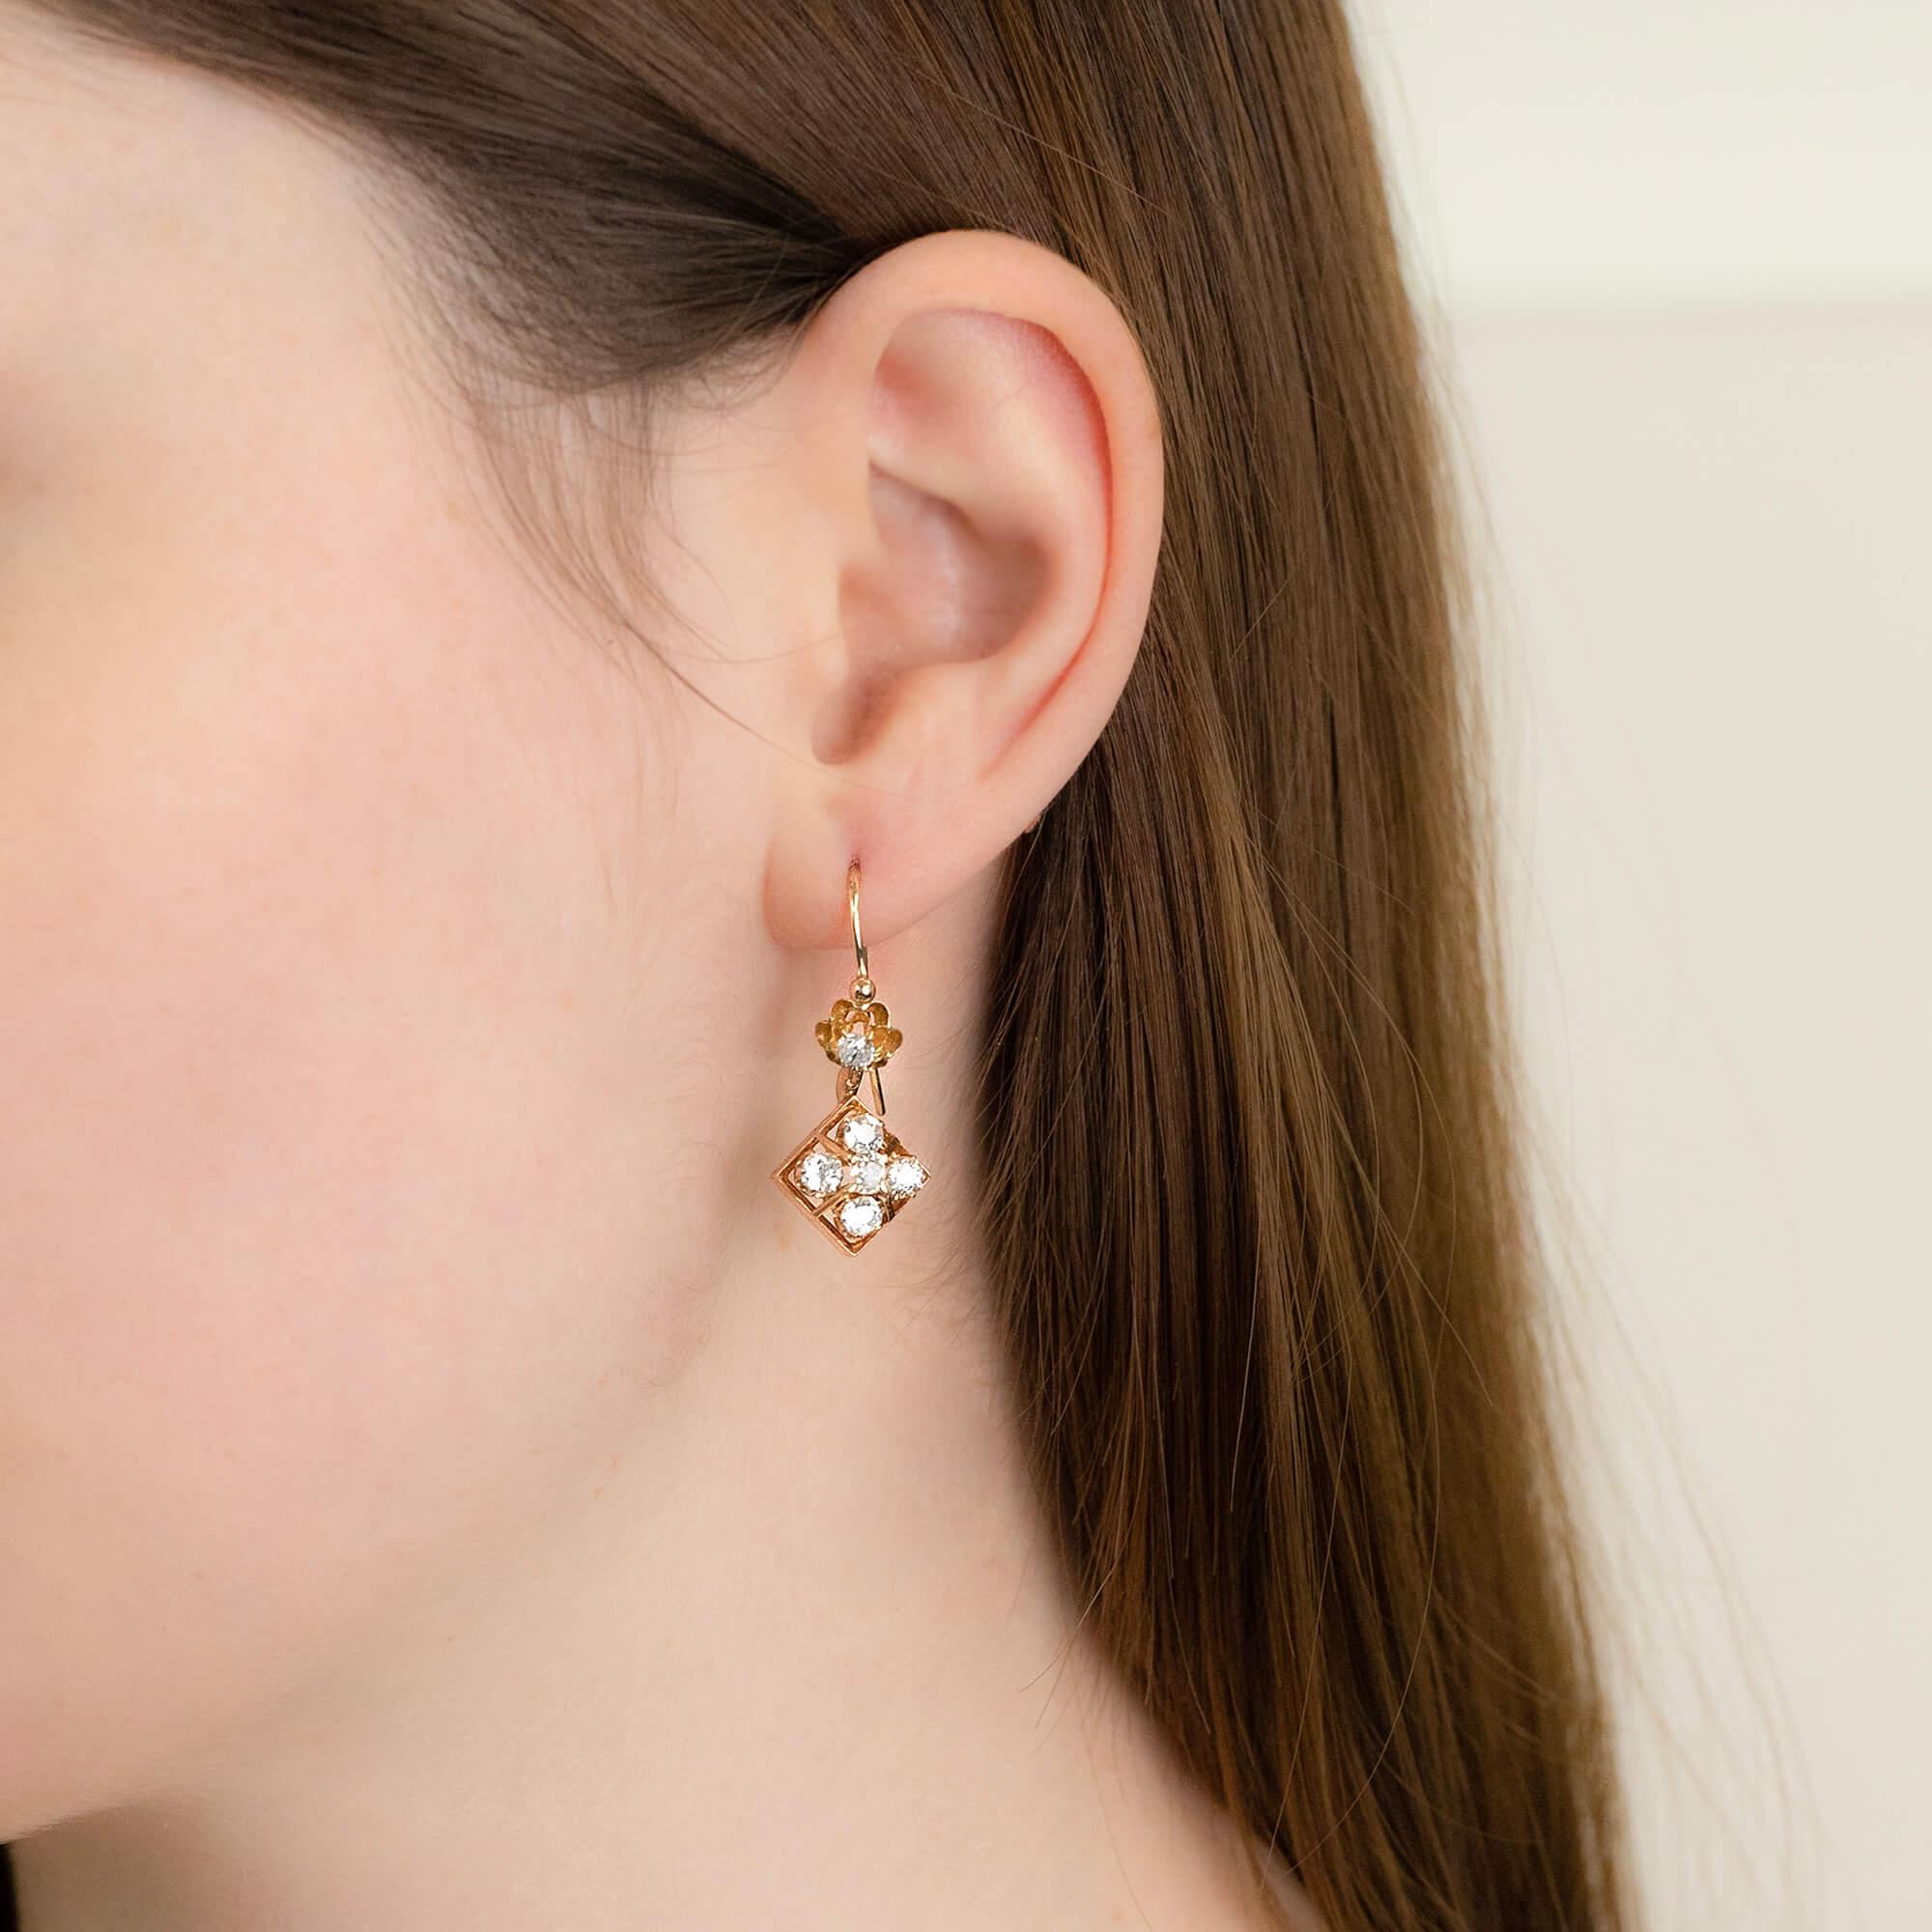 Une paire de boucles d'oreilles pendantes, chacune sertie de six diamants taille ancienne. Réalisées en or jaune, ces boucles d'oreilles sont ornées d'une monture festonnée sertie de diamants et d'un crochet de berger sur une monture en forme de